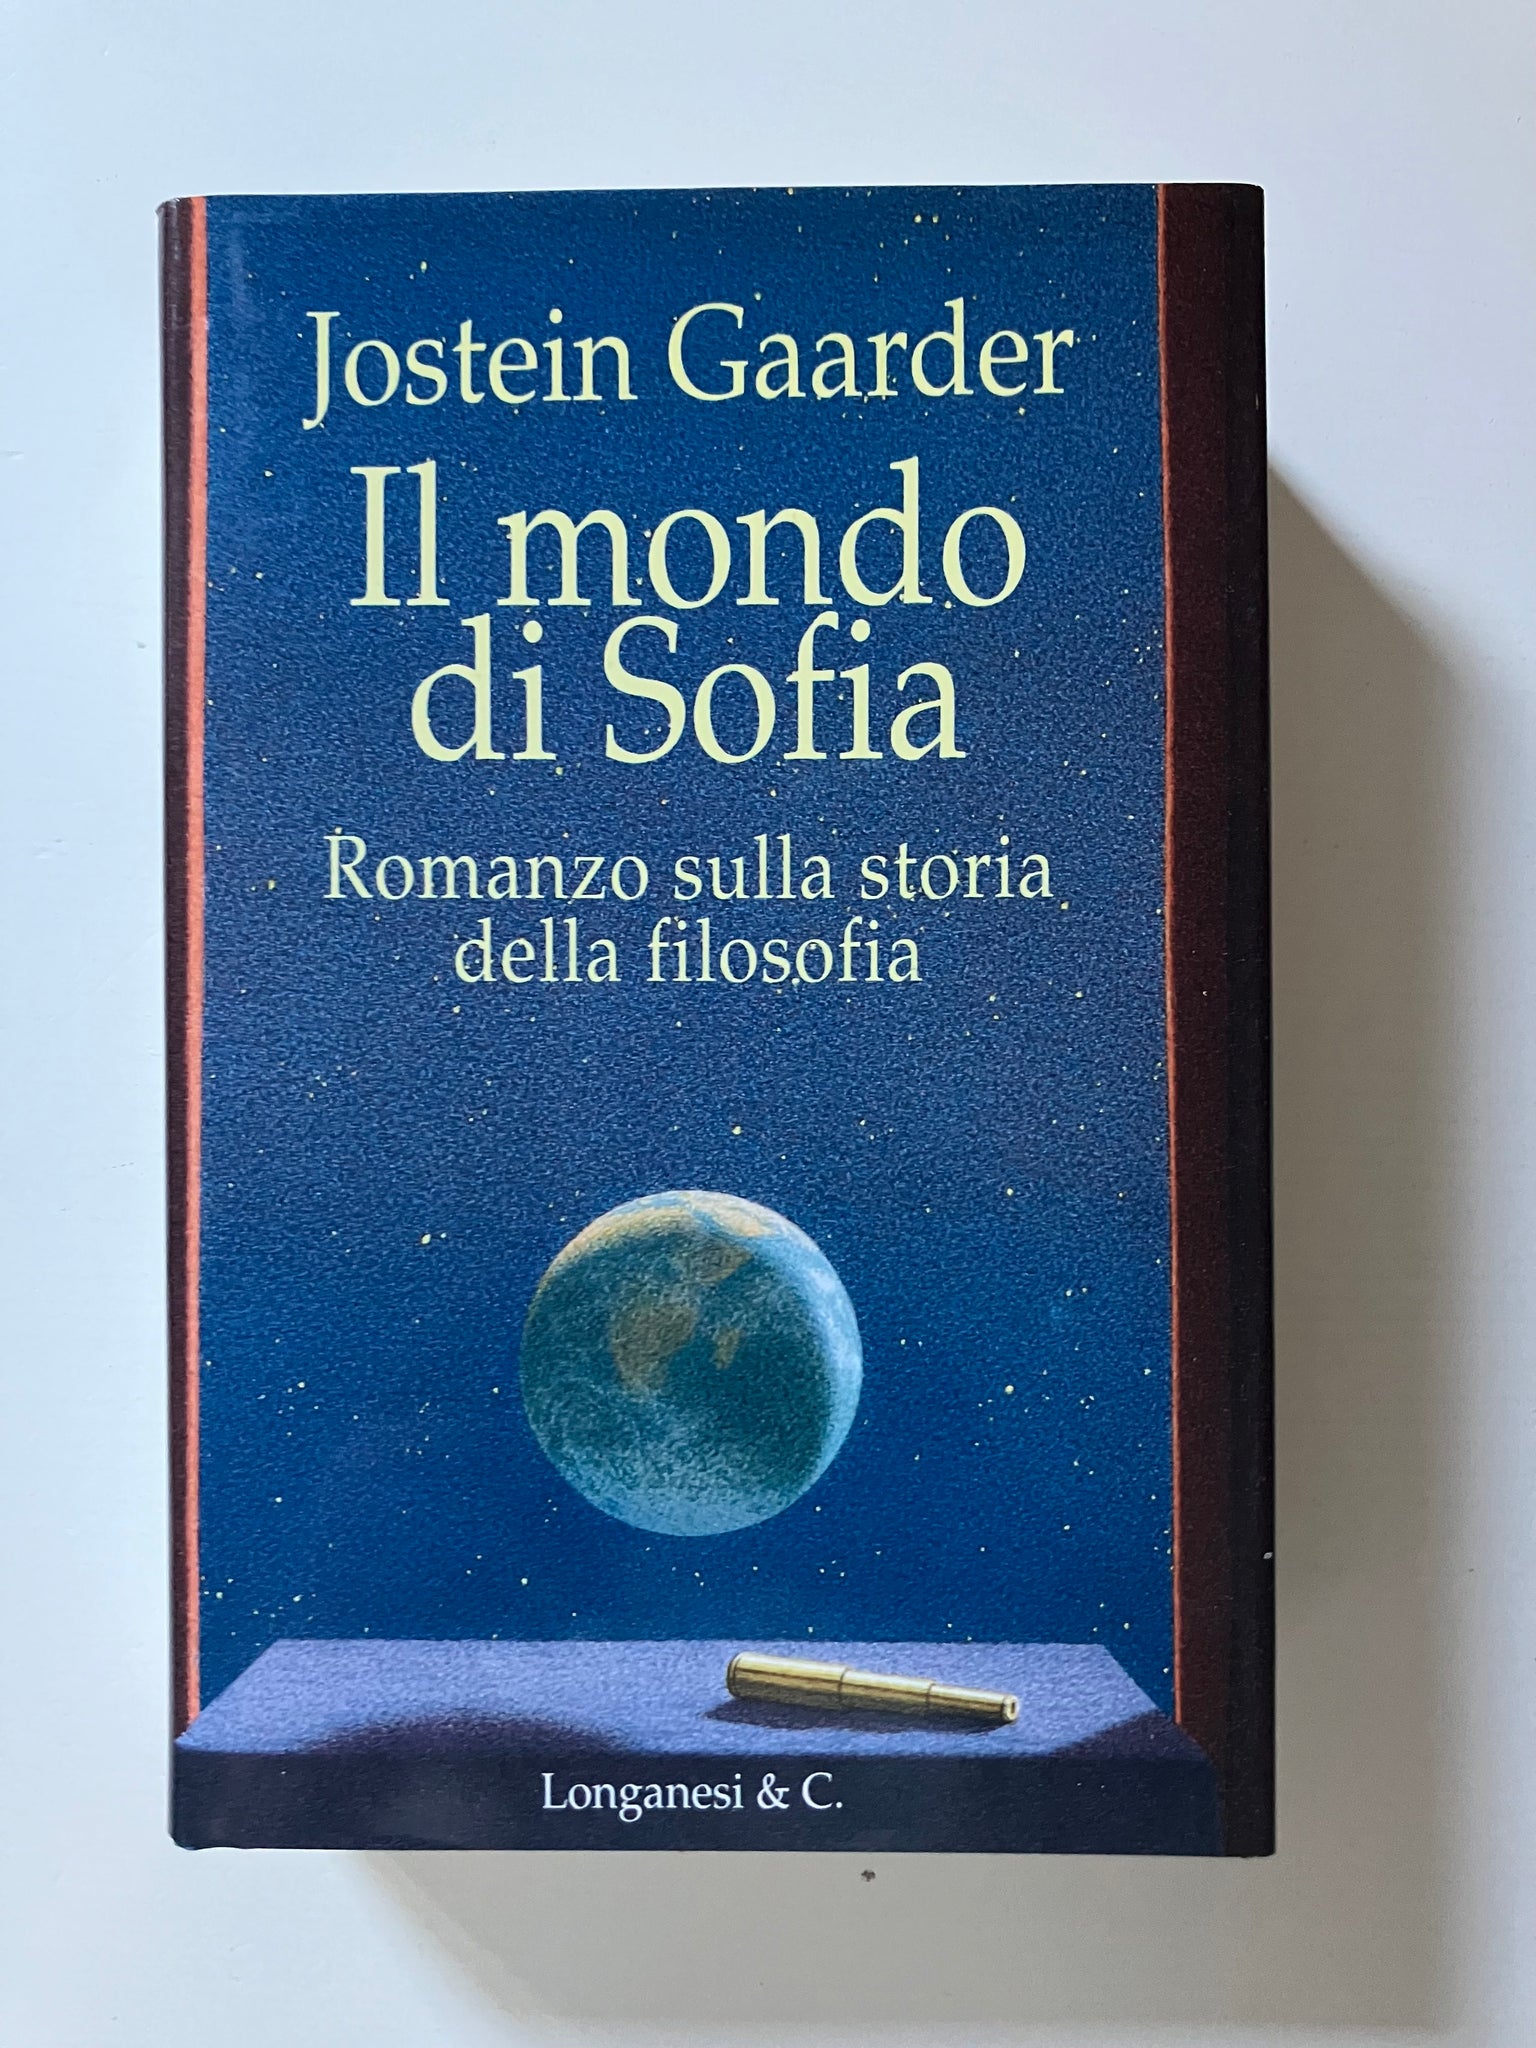 Jostein Gaarder - Il mondo di Sofia  Romanzo sulla storia della filosofia